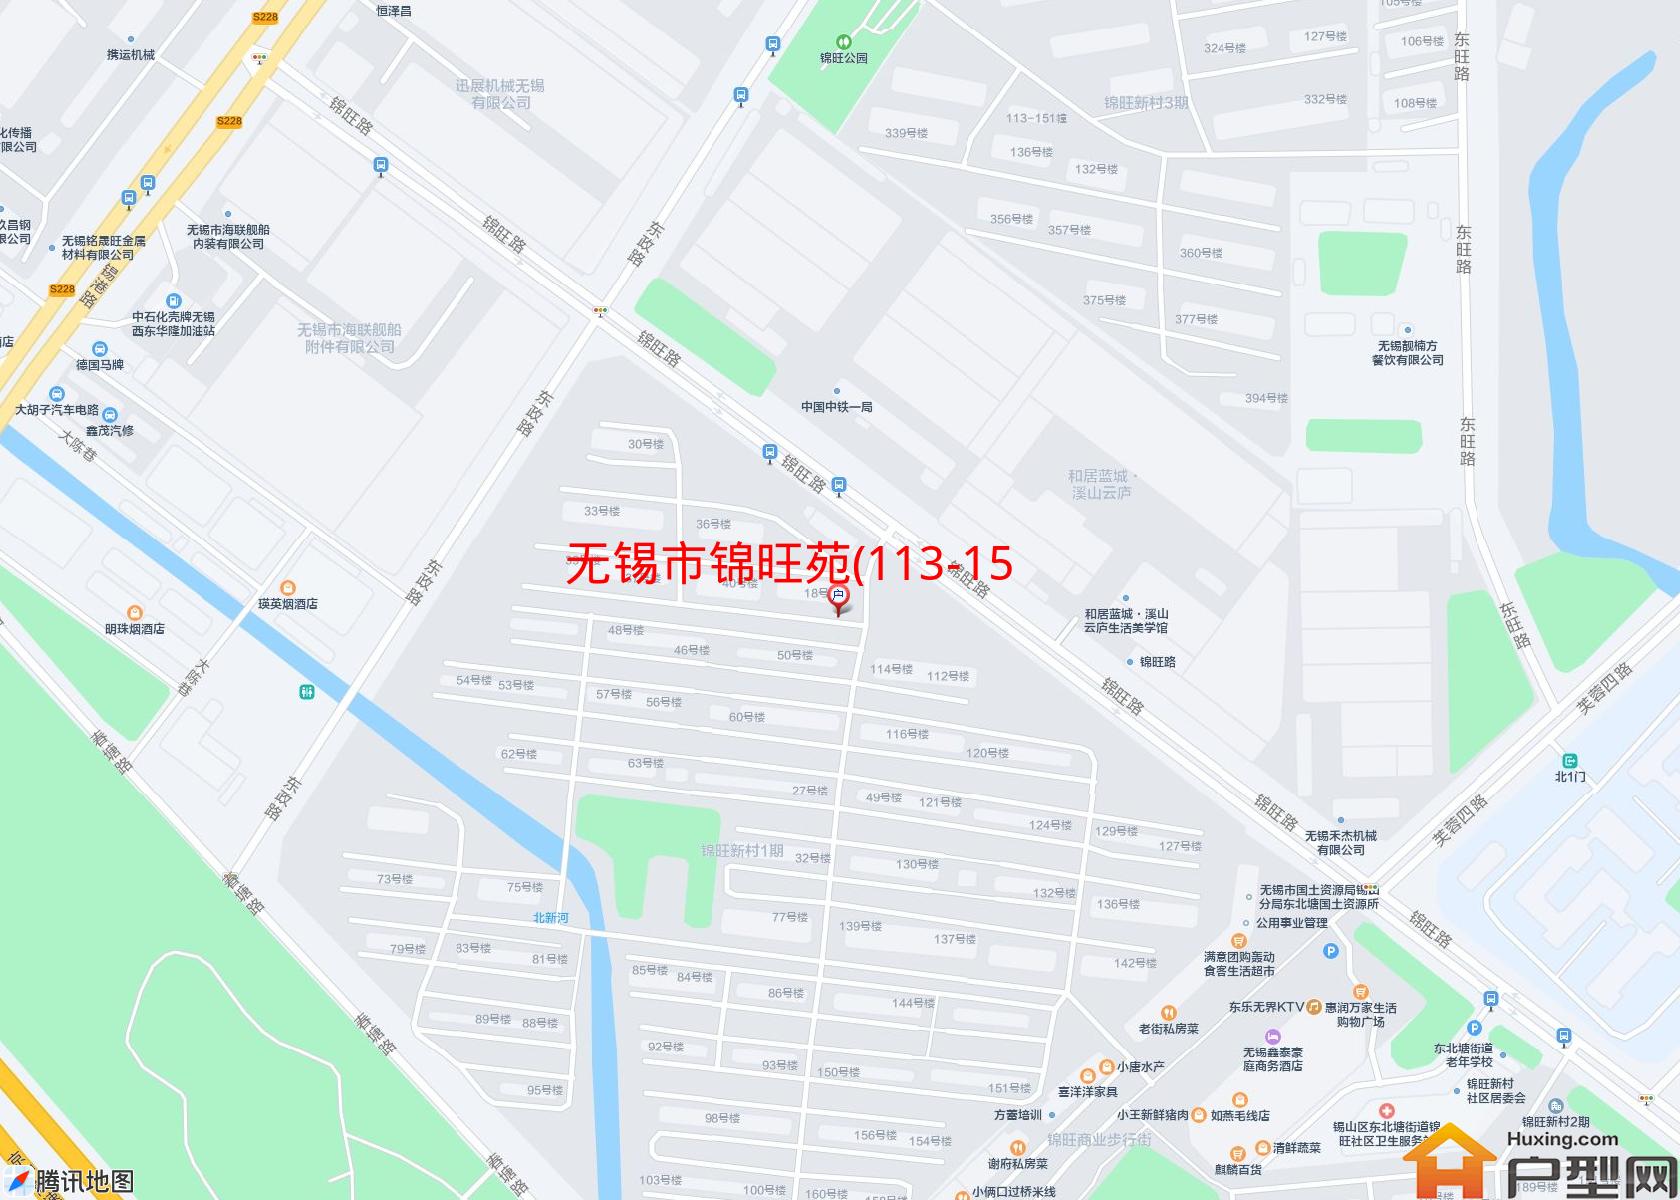 锦旺苑(113-151幢)小区 - 户型网